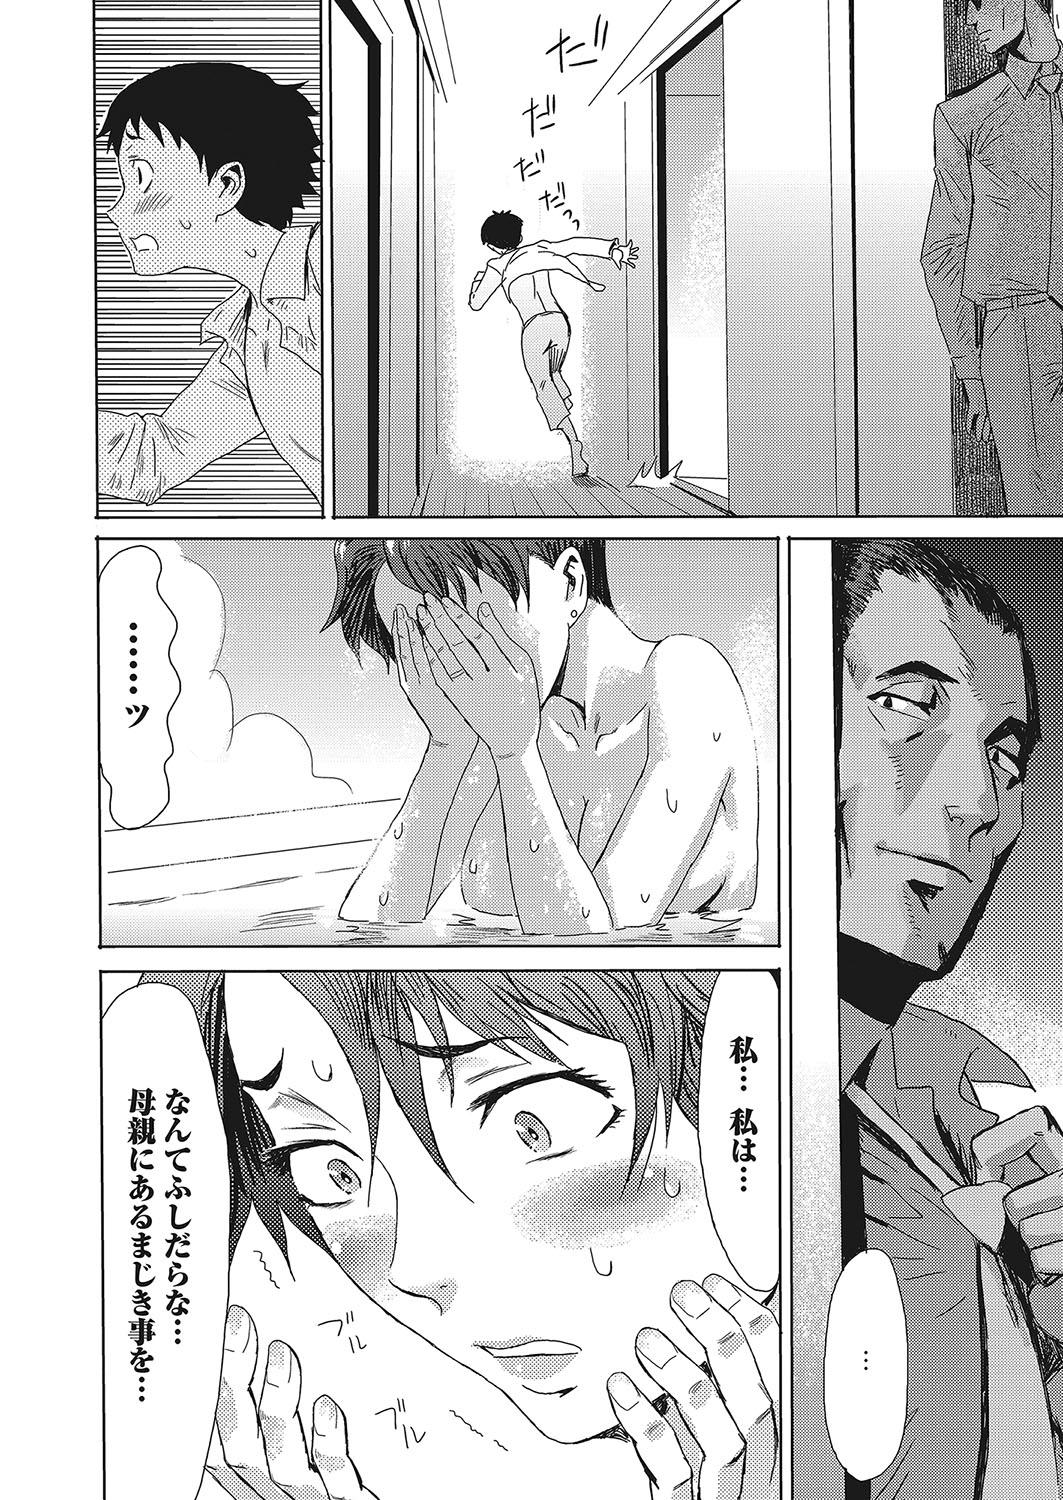 Bubblebutt Web Manga Bangaichi Vol. 12 And - Page 9